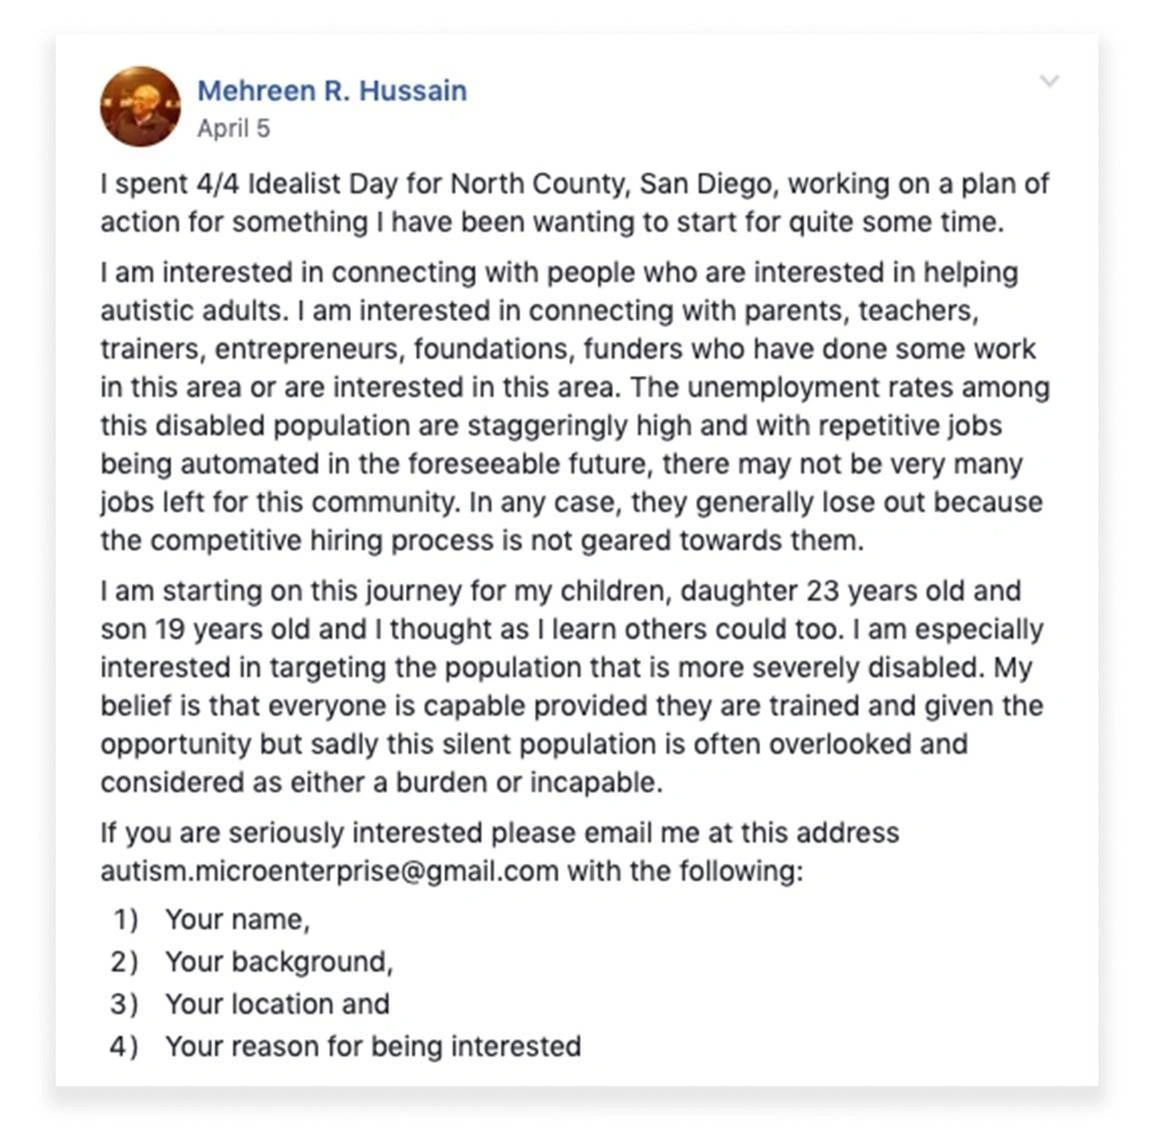 Mehreen R. Hussain Idealist Day 4/4 Post